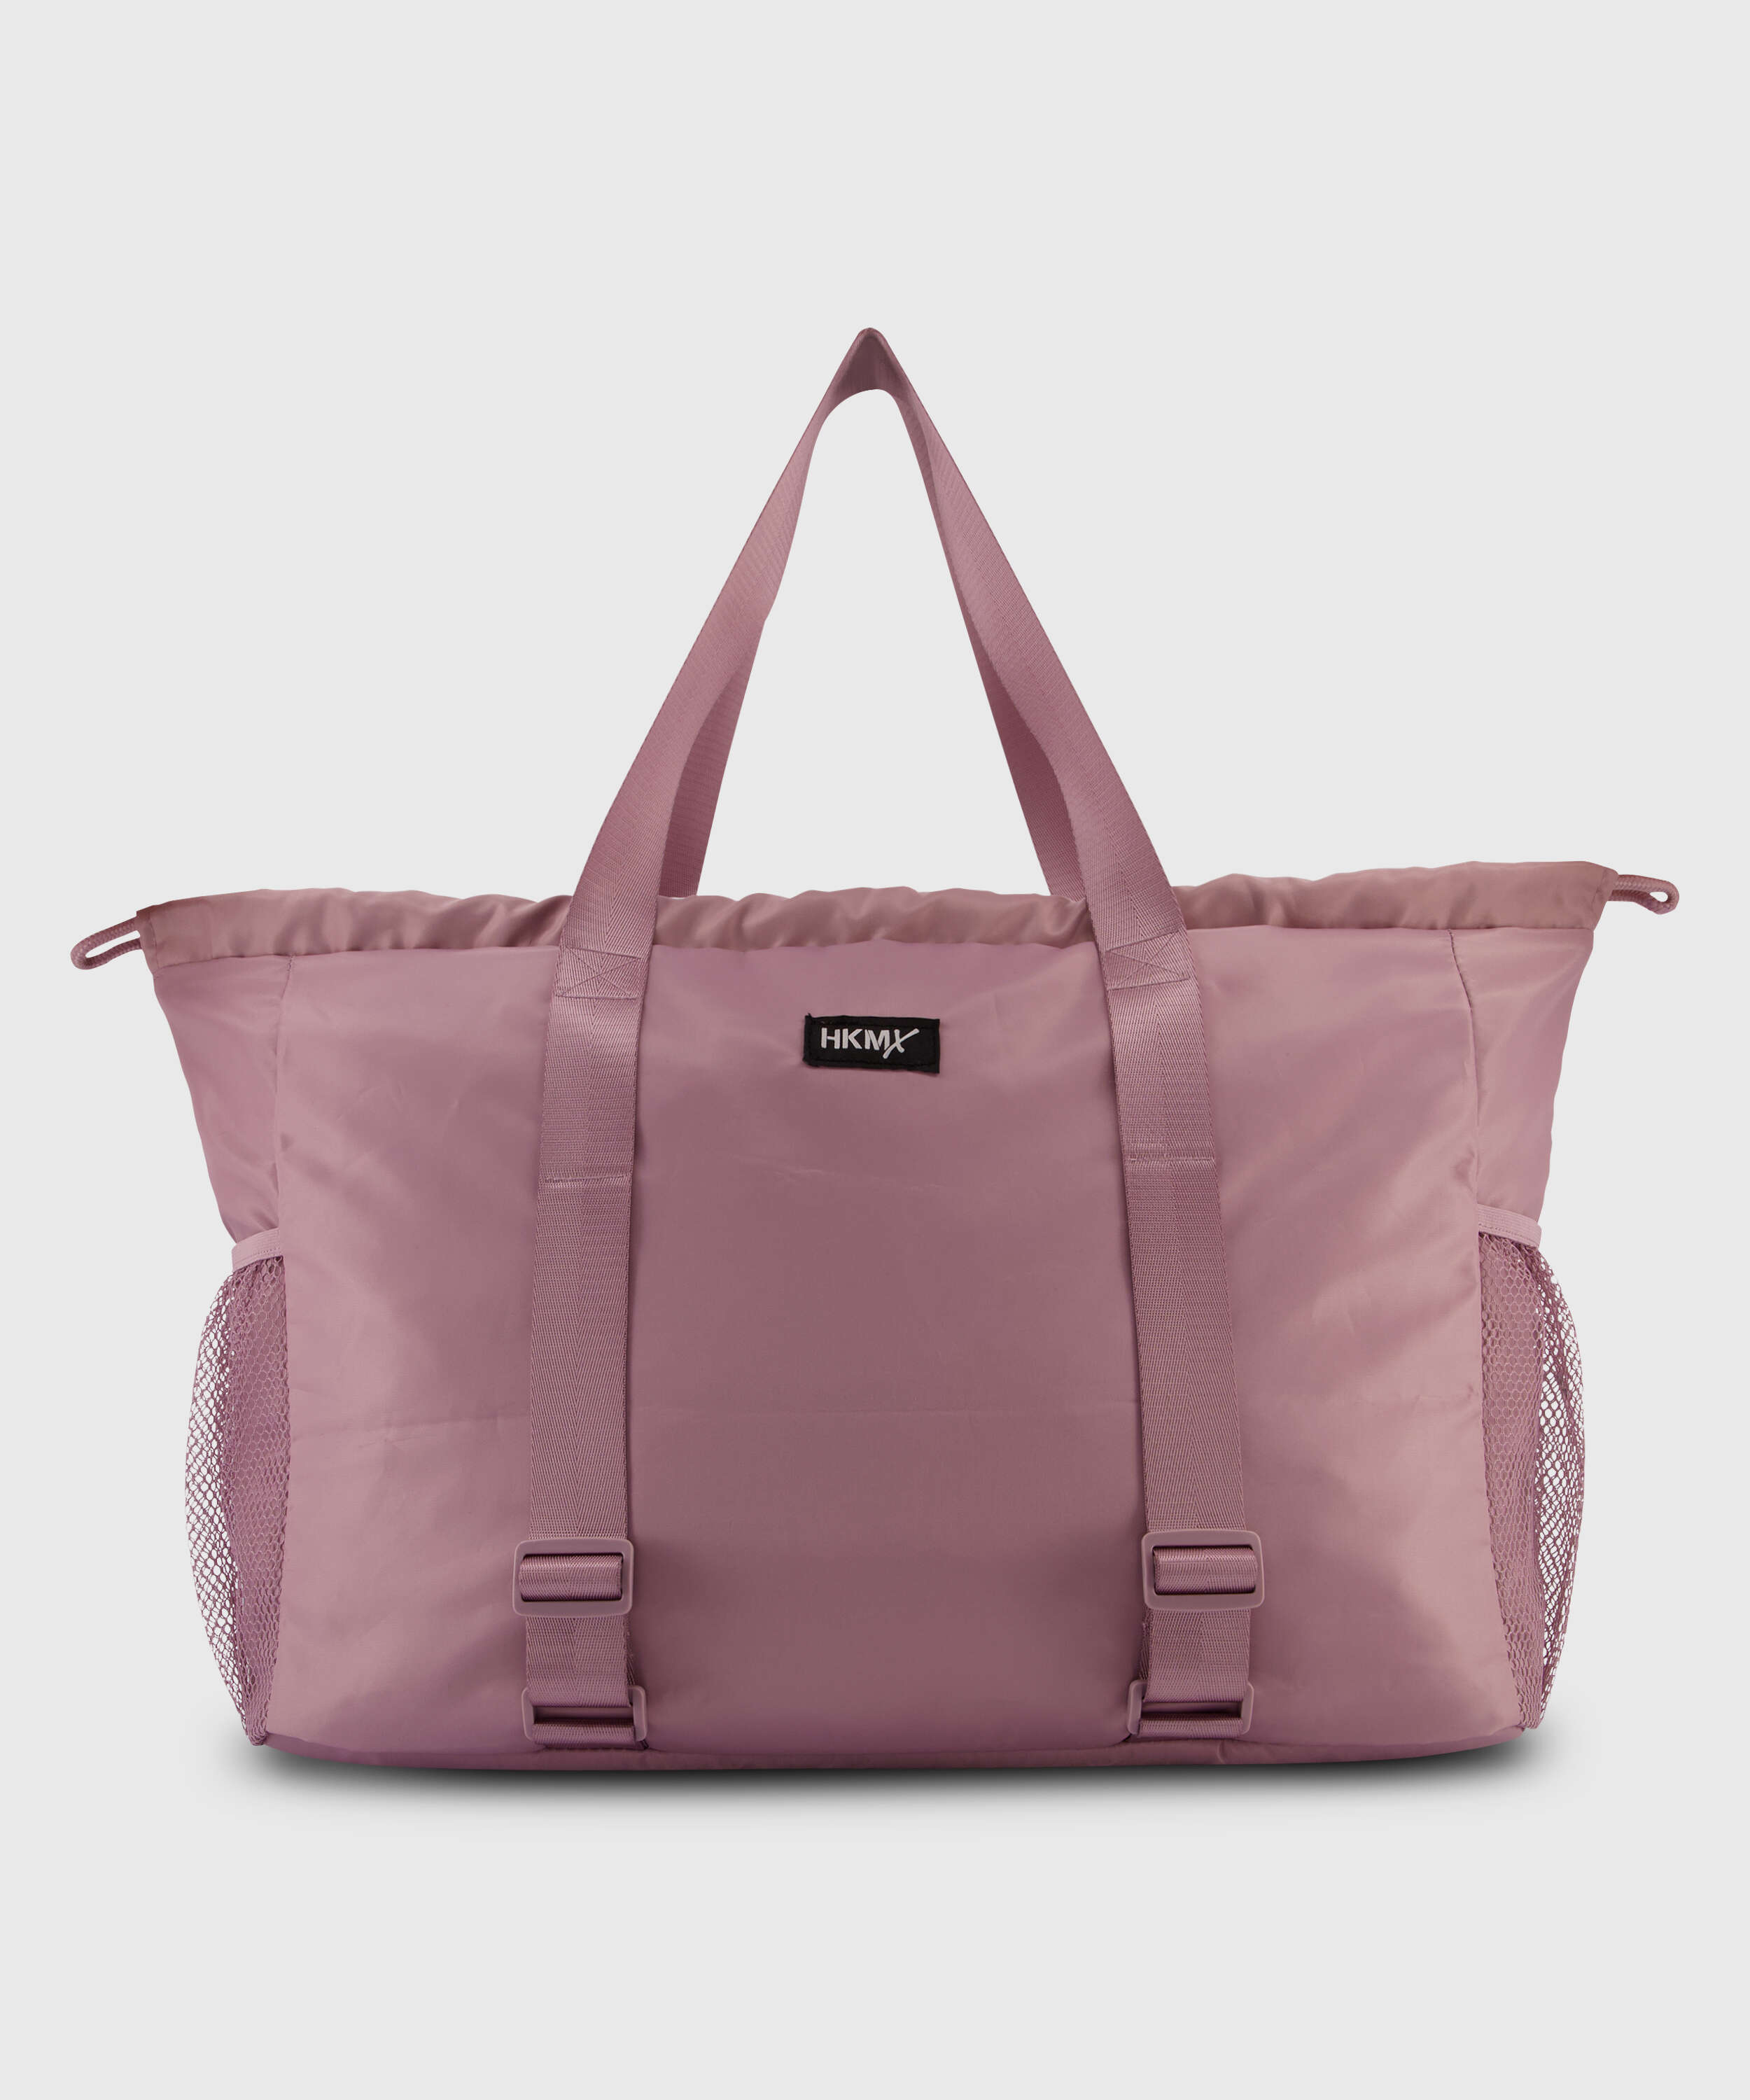 HKMX Tote bag, Purple, main